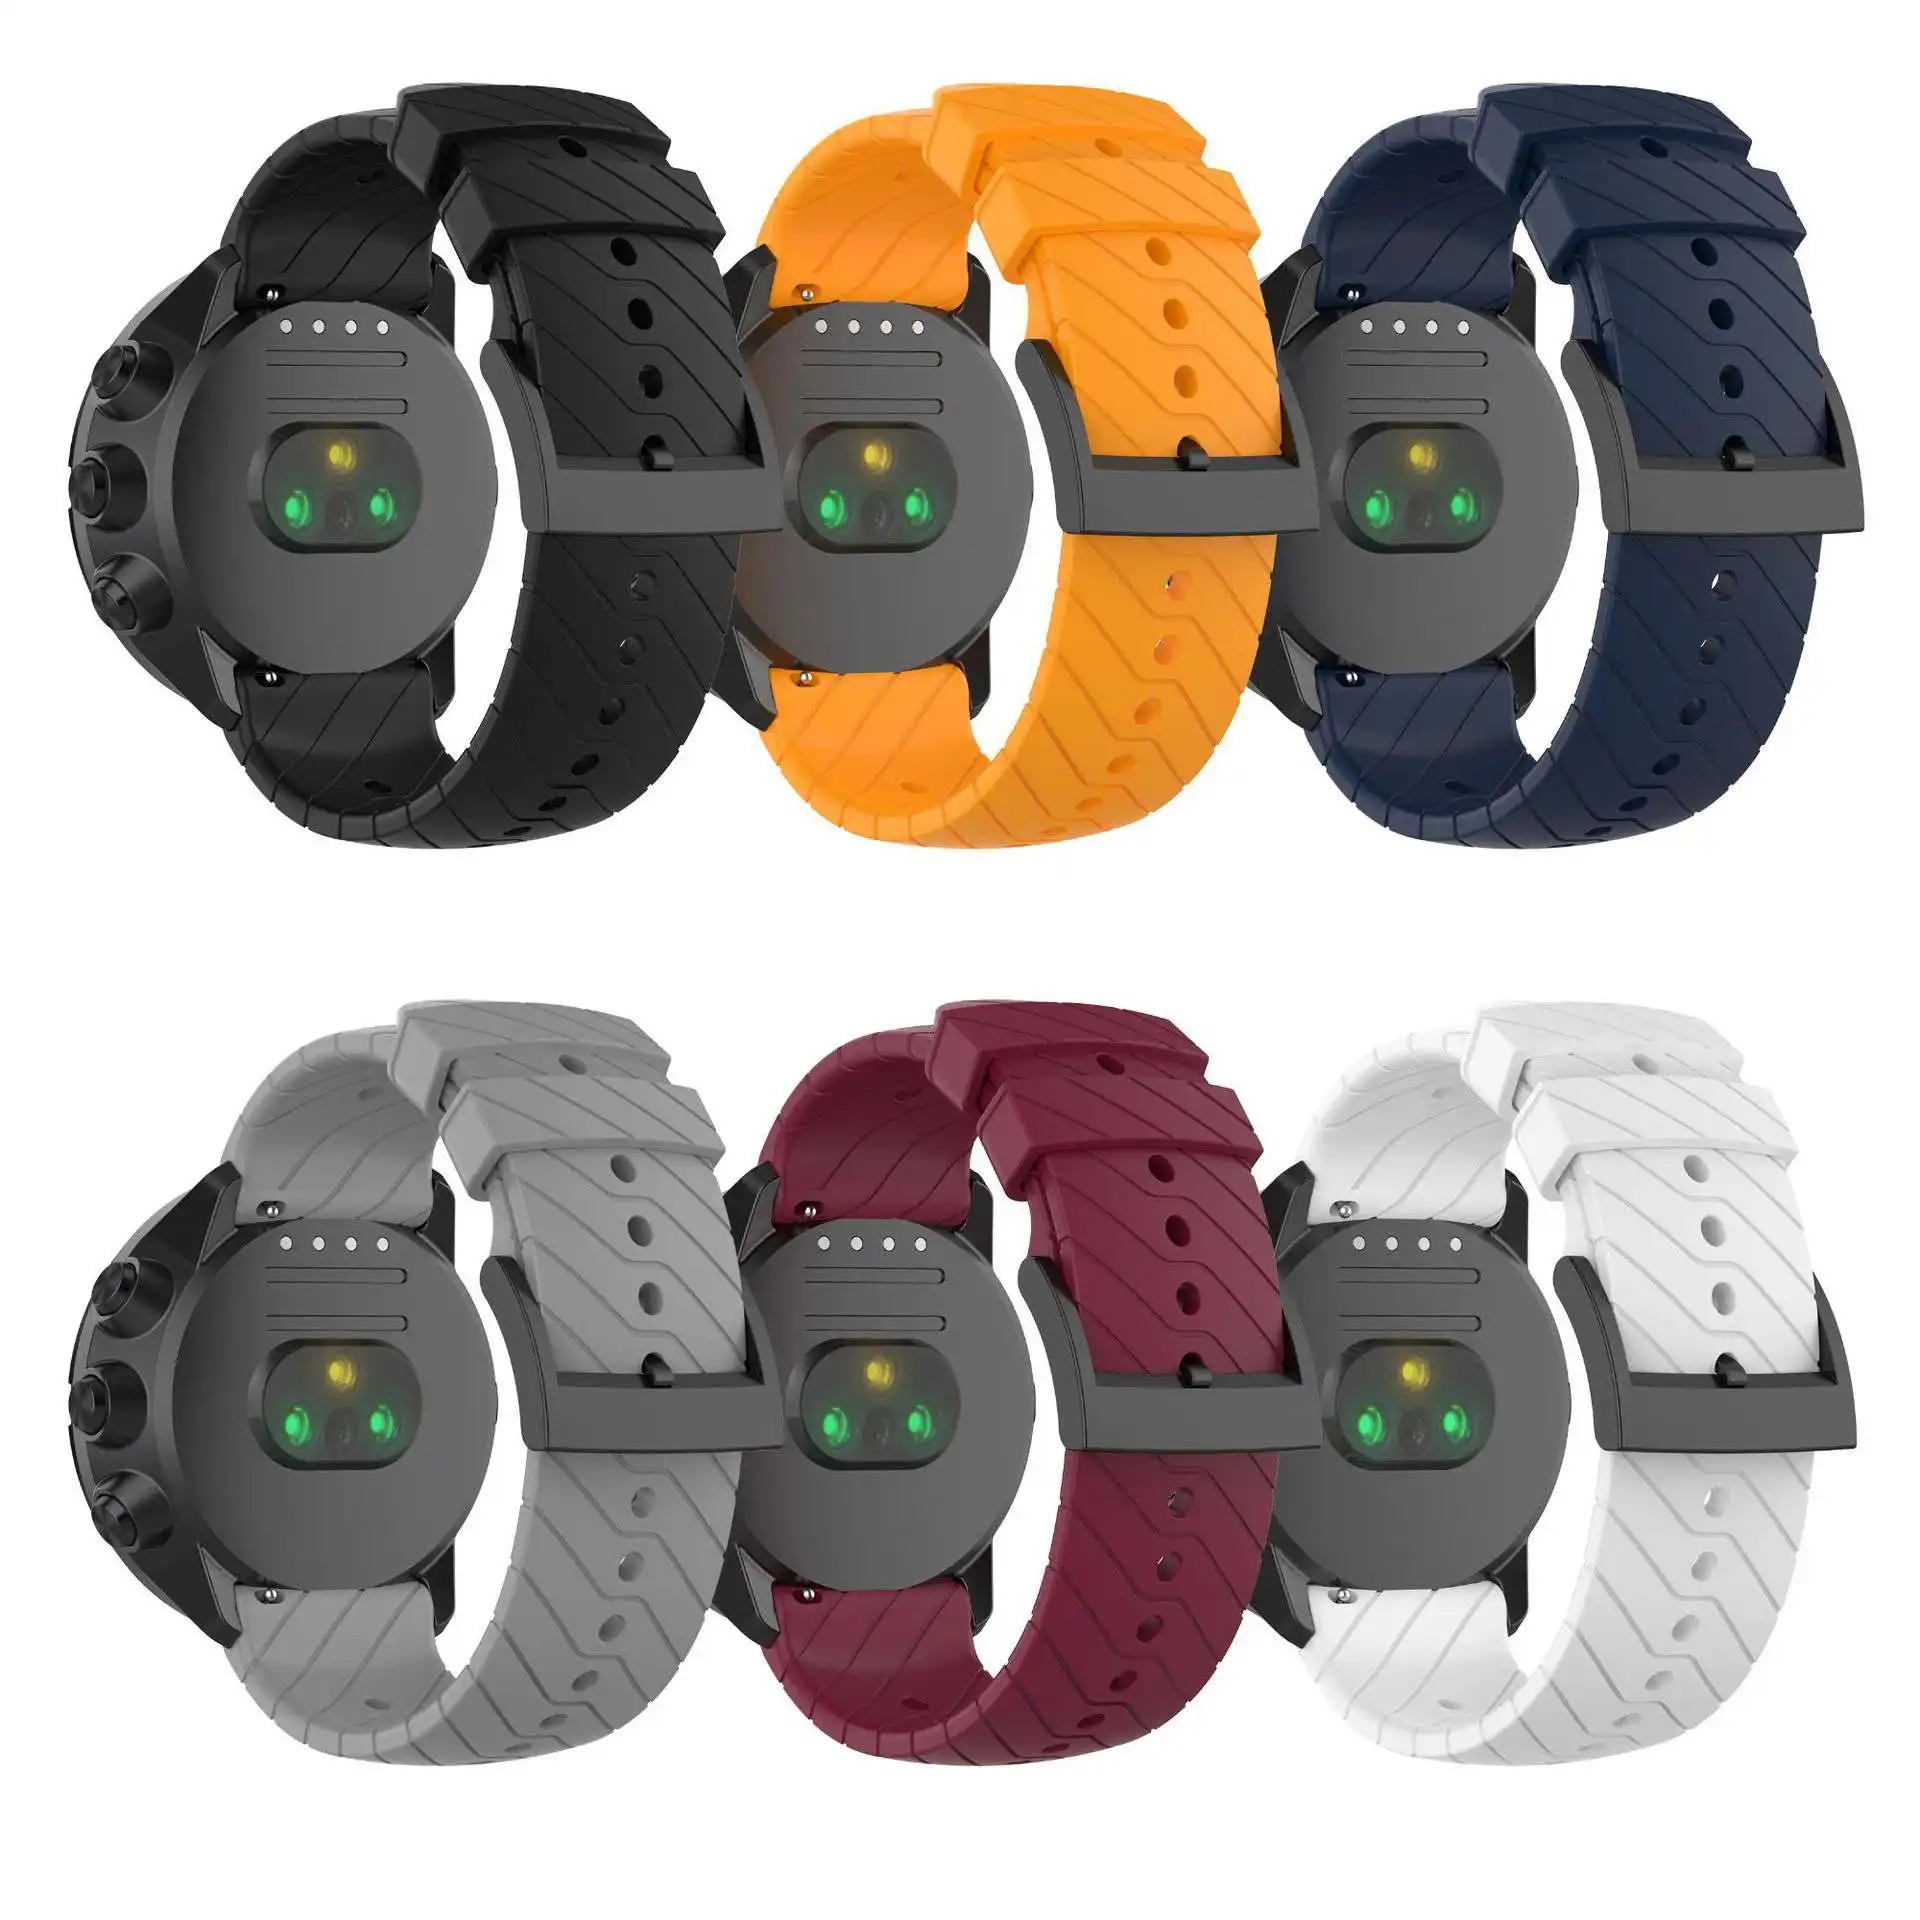 Bracelet de rechange pour Suunto 7 Suunto 9 baro, accessoires de montre, bracelet en silicone pour Suunto D5 spartan sport poignet hr baro